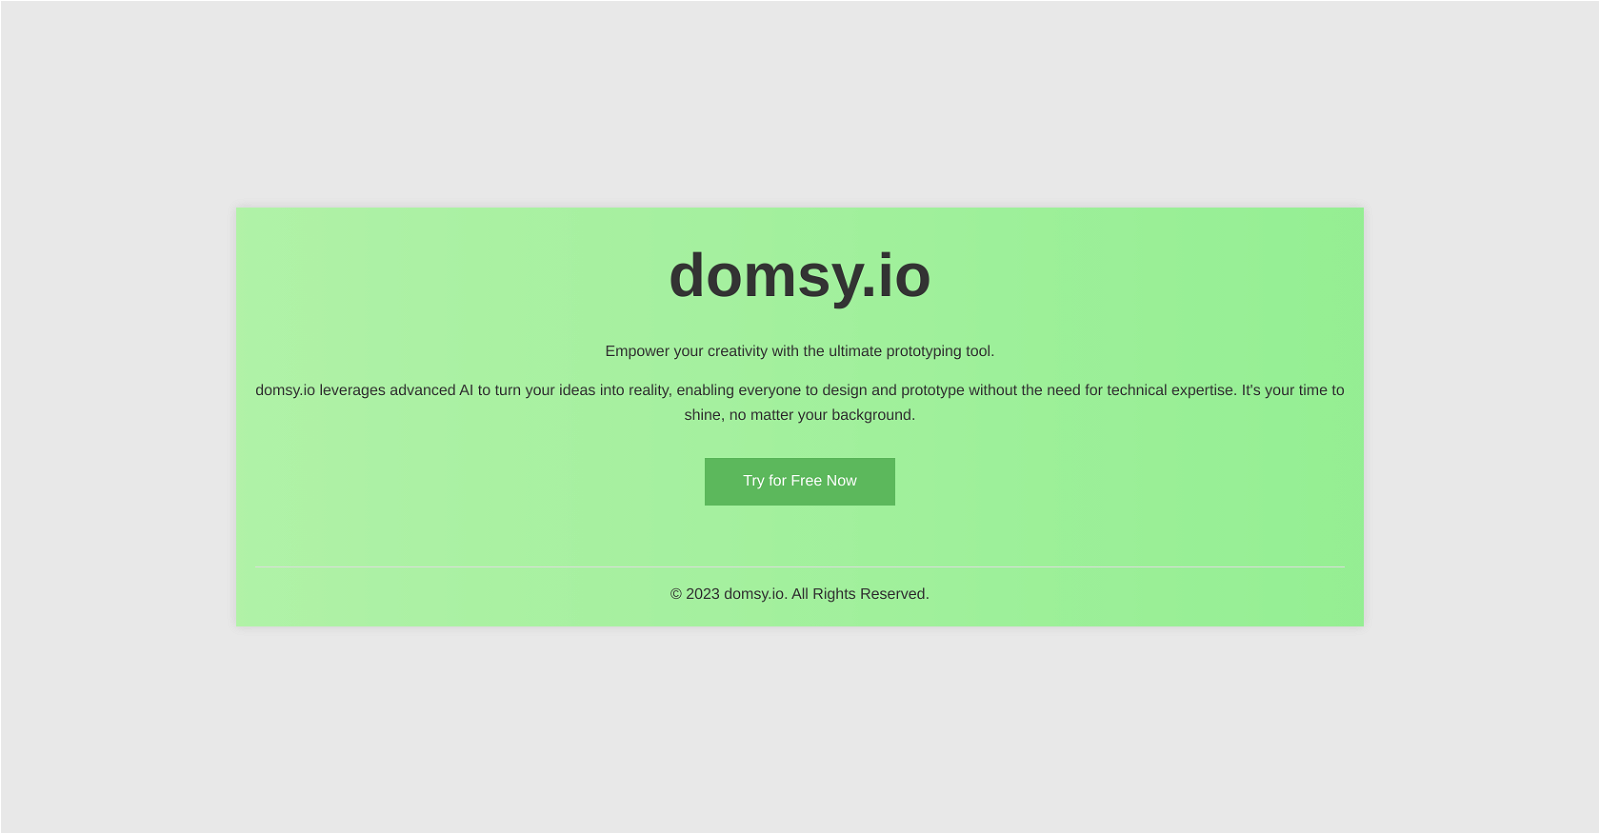 DOMSY.IO website